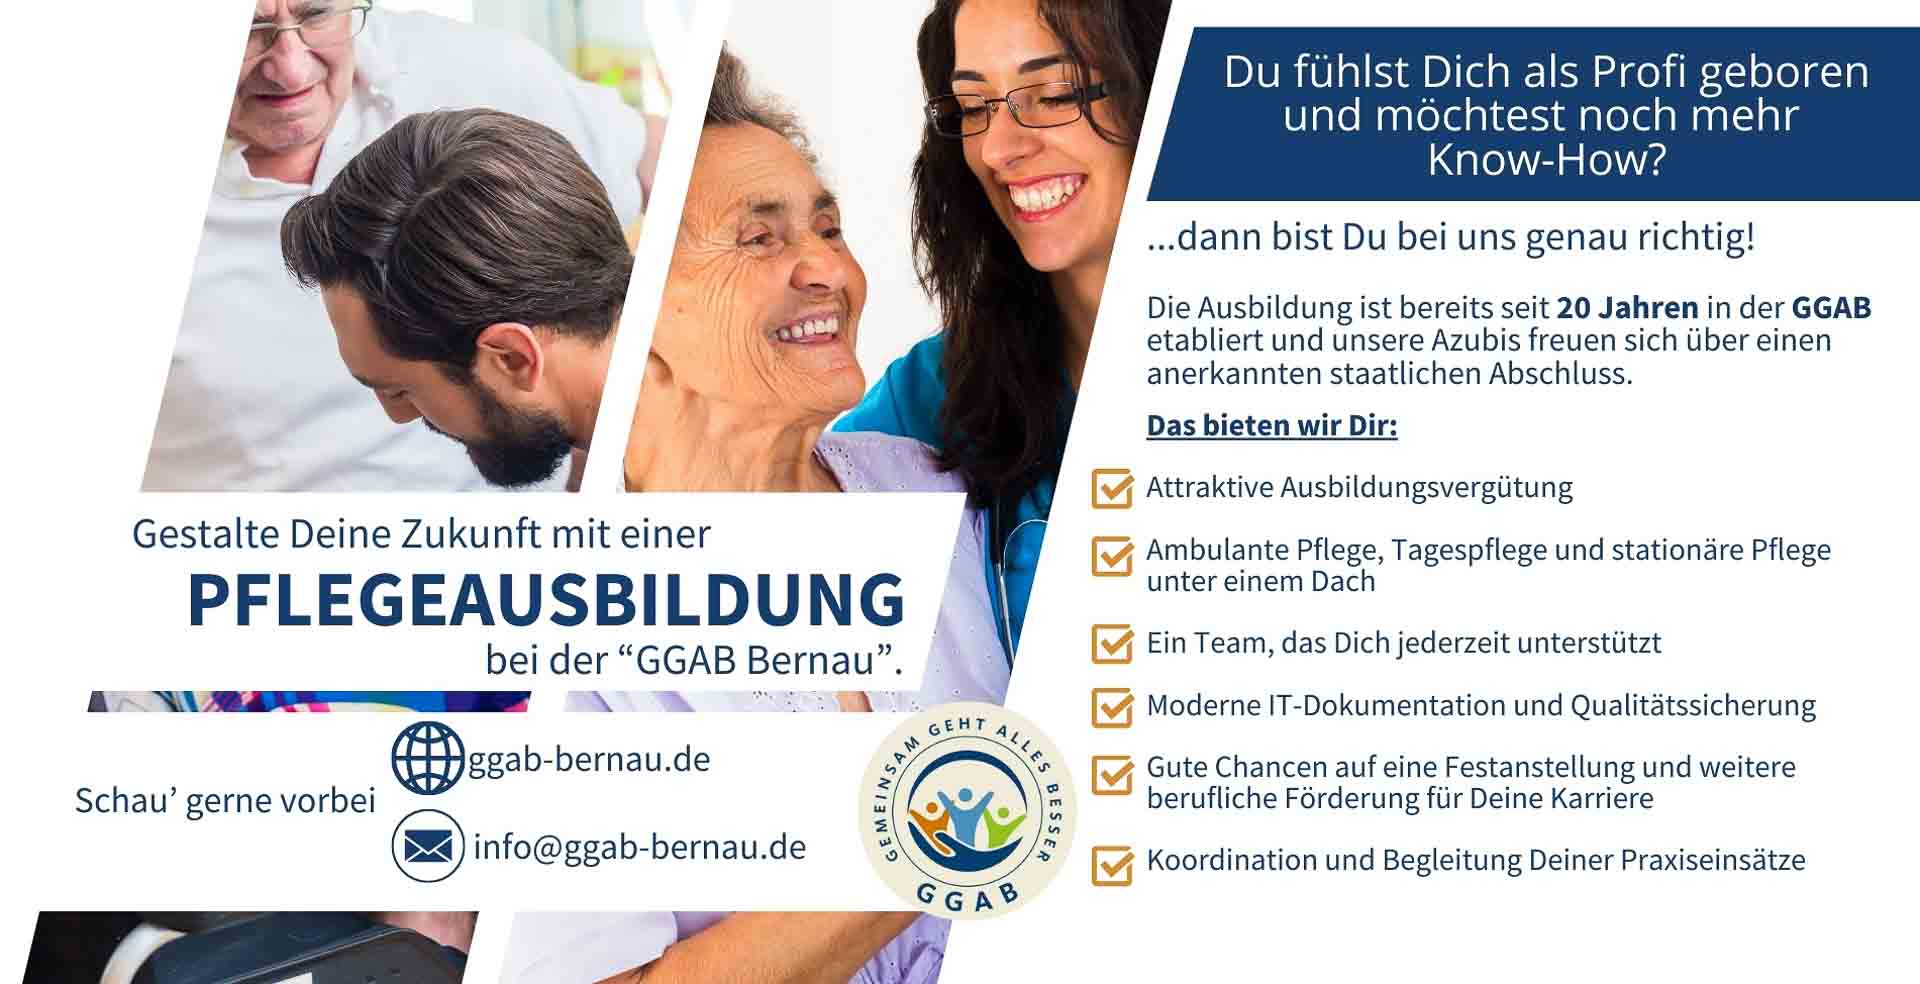 Deine Pflegeausbildung bei der GGAB Bernau - willkommen!